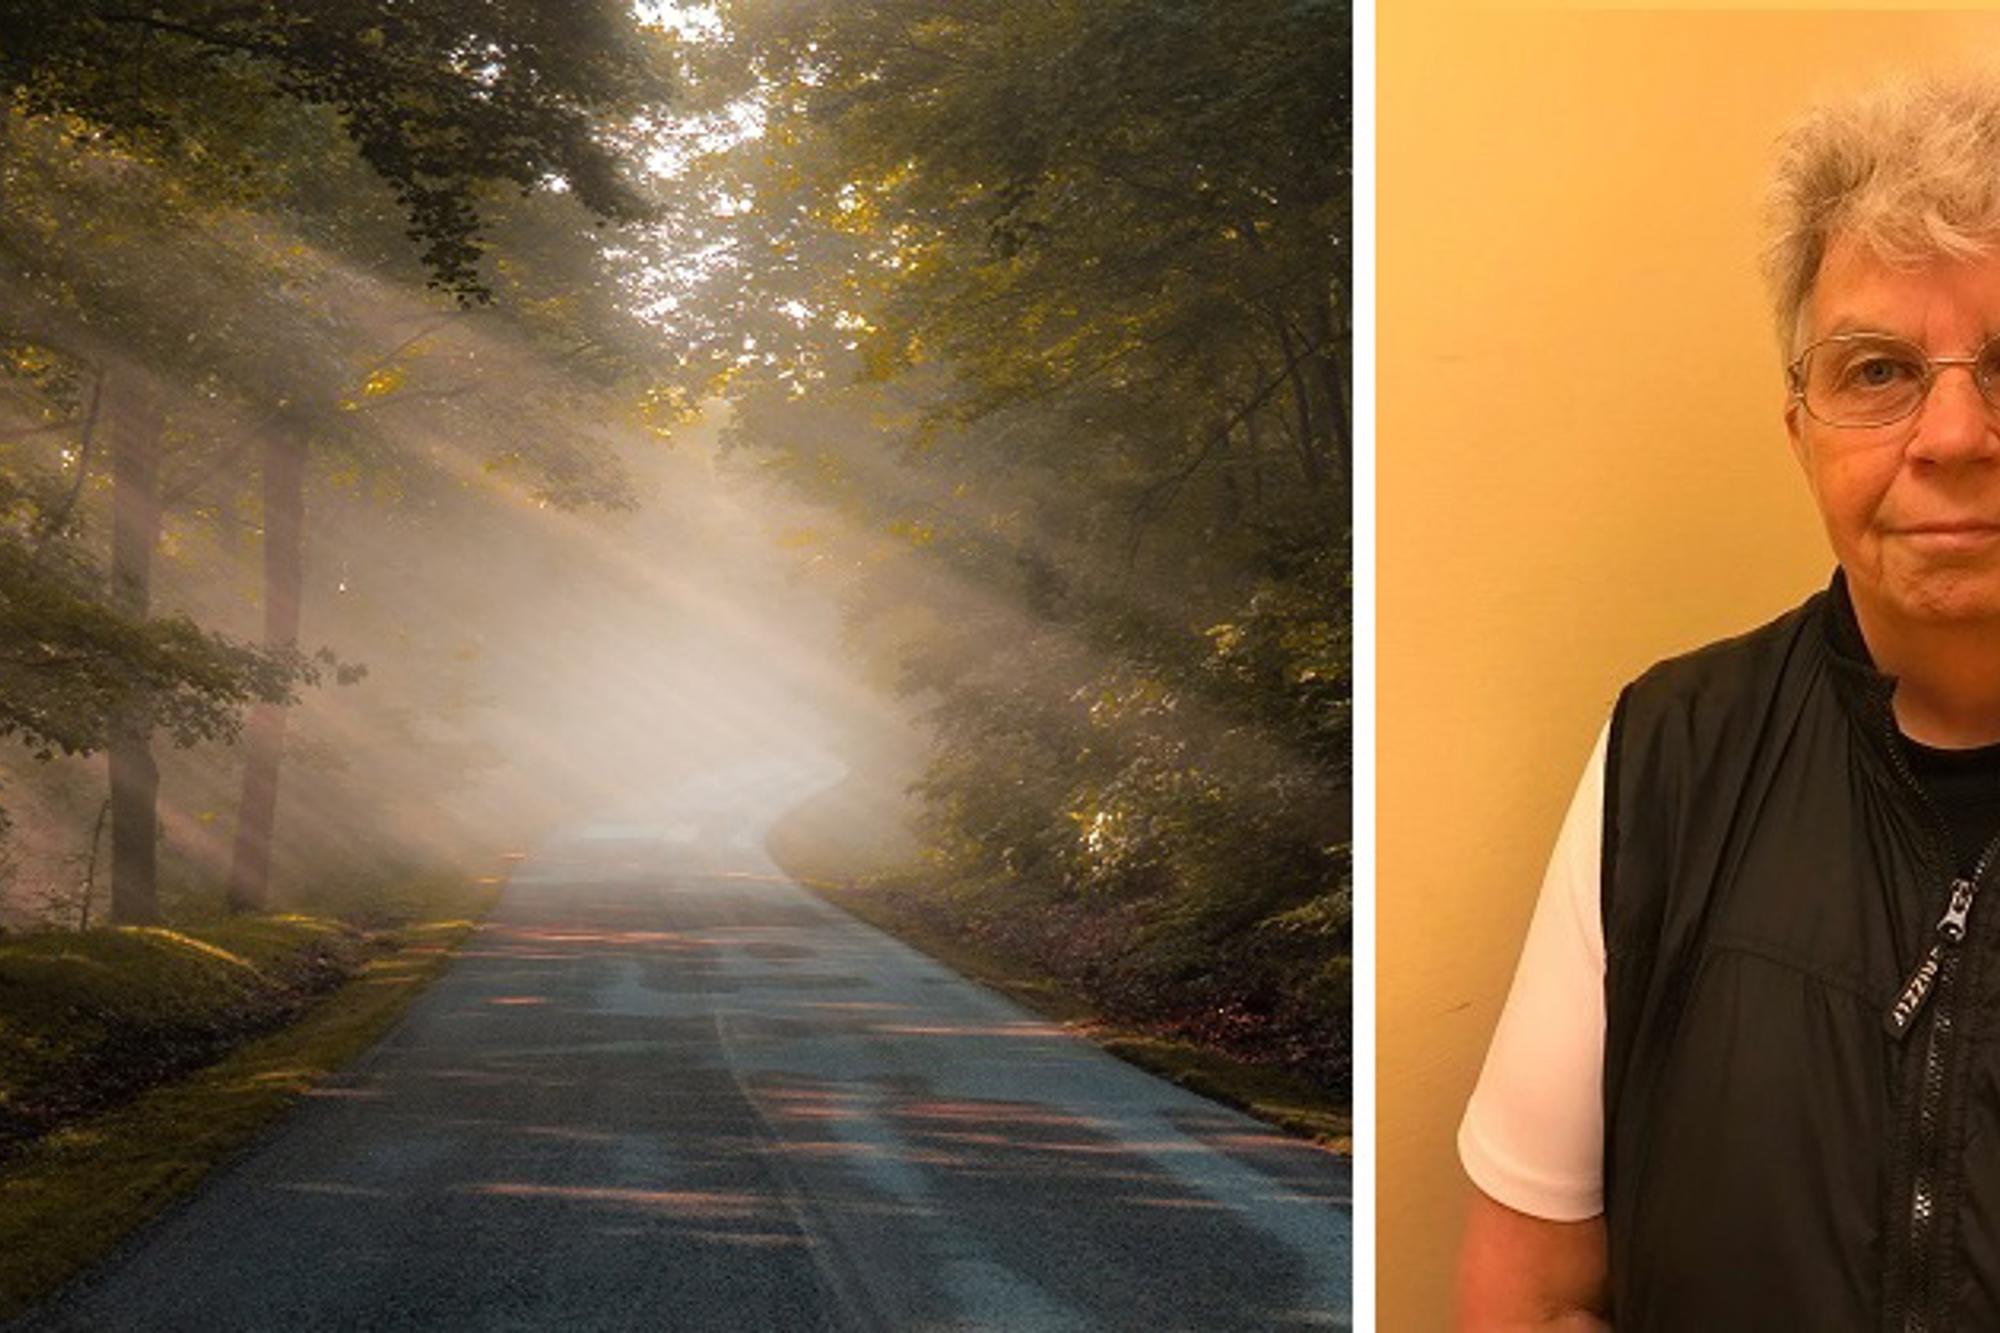 Till vänster: En asfalterad väg med träd som står längs båda sidorna av vägen. Till vänster om vägen kikar solstrålar fram genom trädkronorna. Till höger: Porträttbild av Karin Sundell.